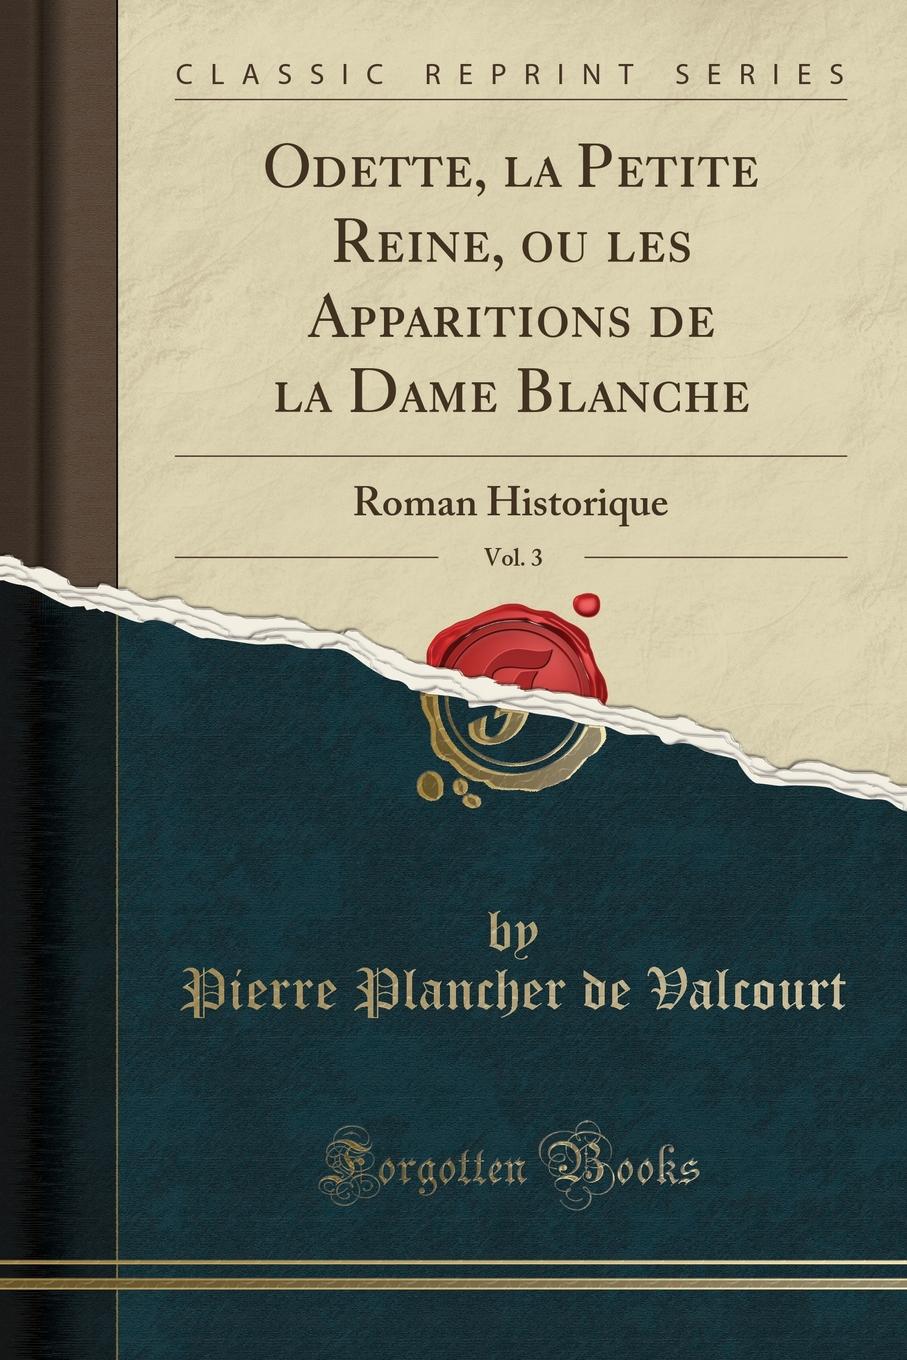 Pierre Plancher de Valcourt Odette, la Petite Reine, ou les Apparitions de la Dame Blanche, Vol. 3. Roman Historique (Classic Reprint)